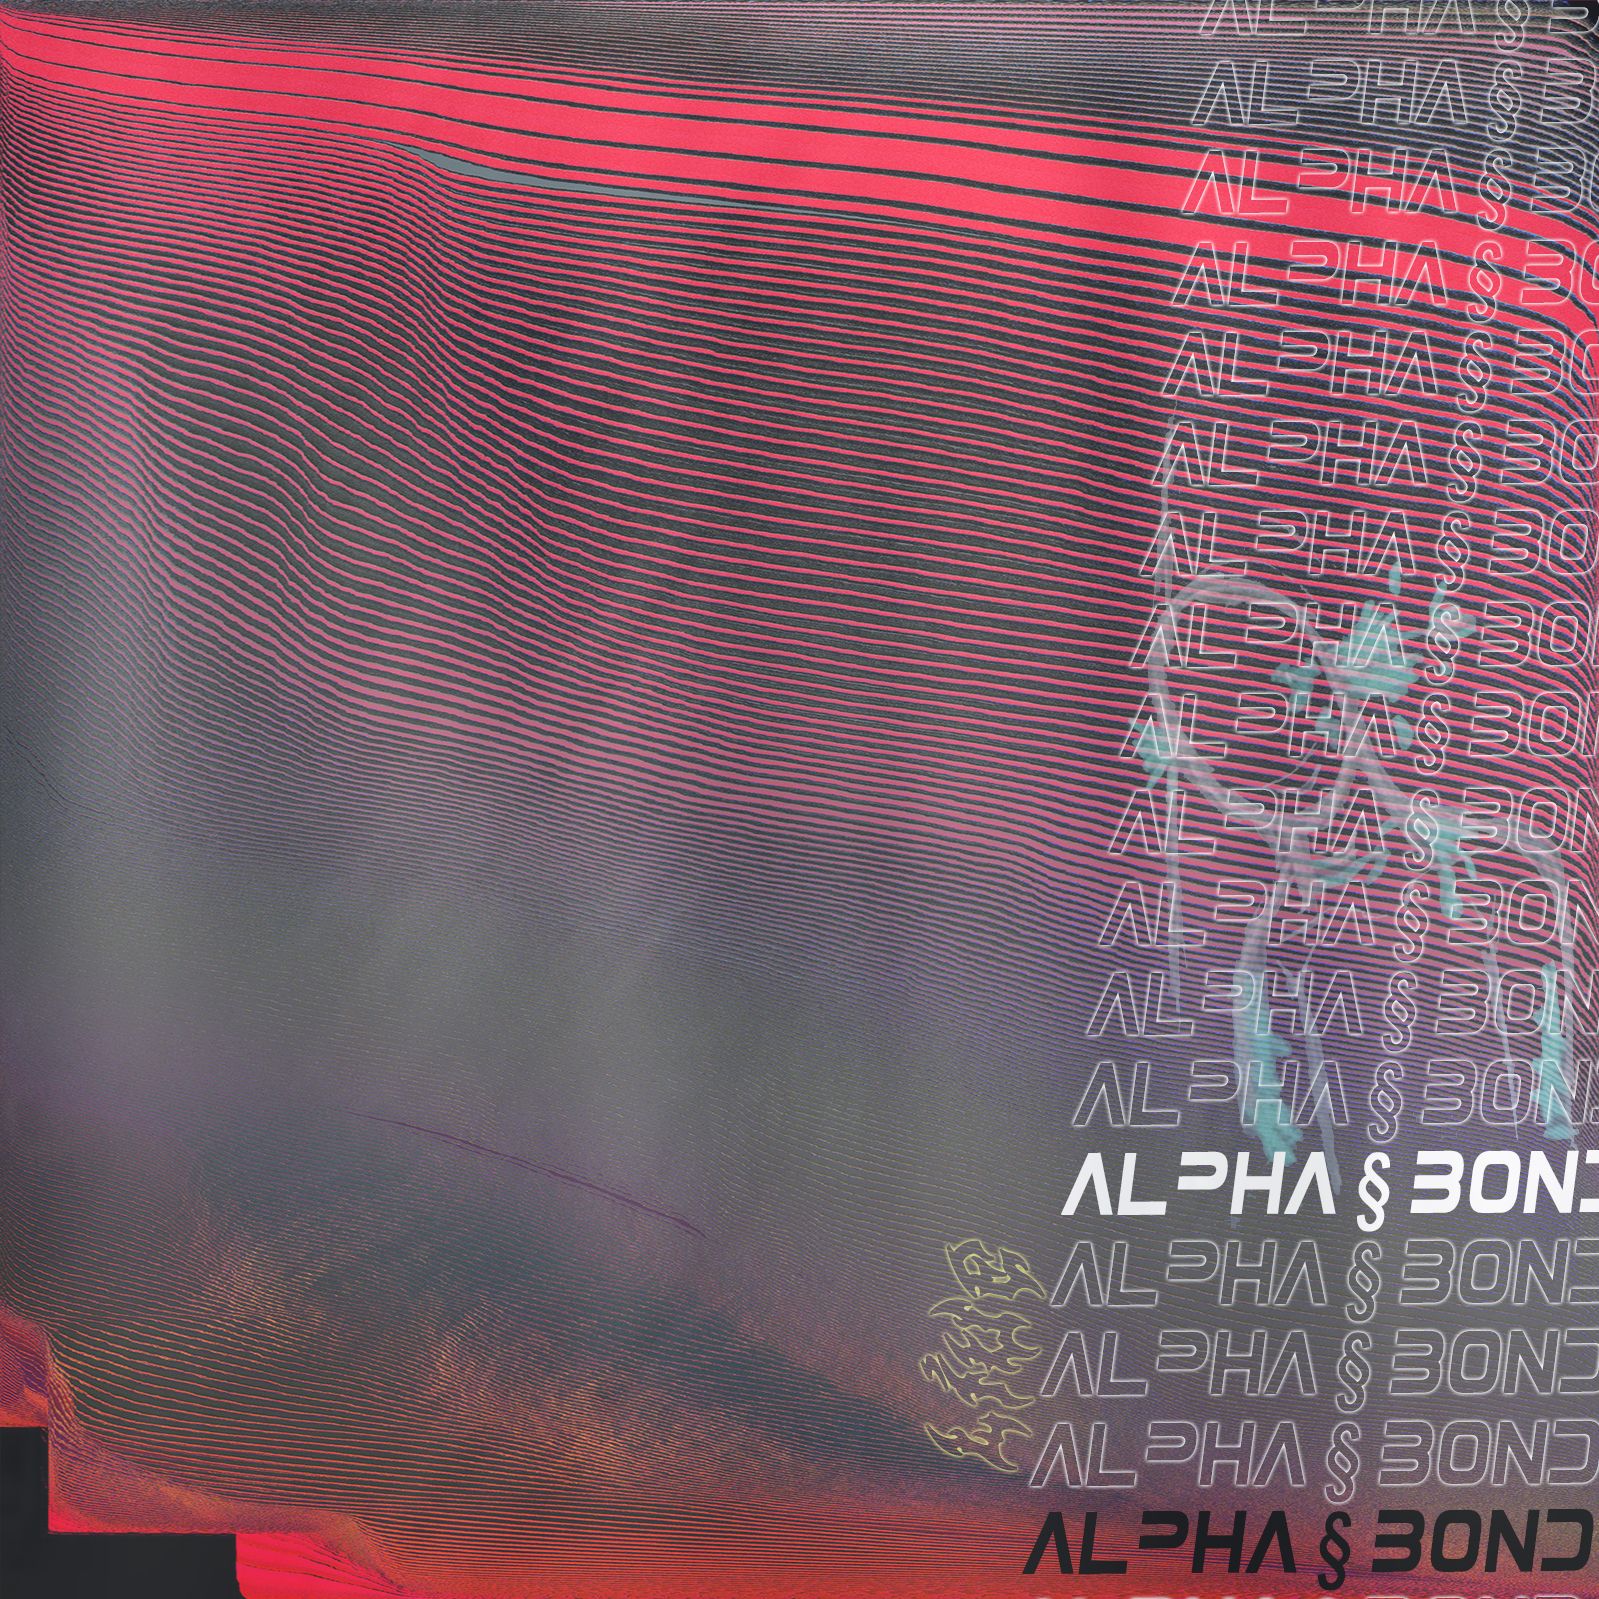 Nedlasting alpha § bond